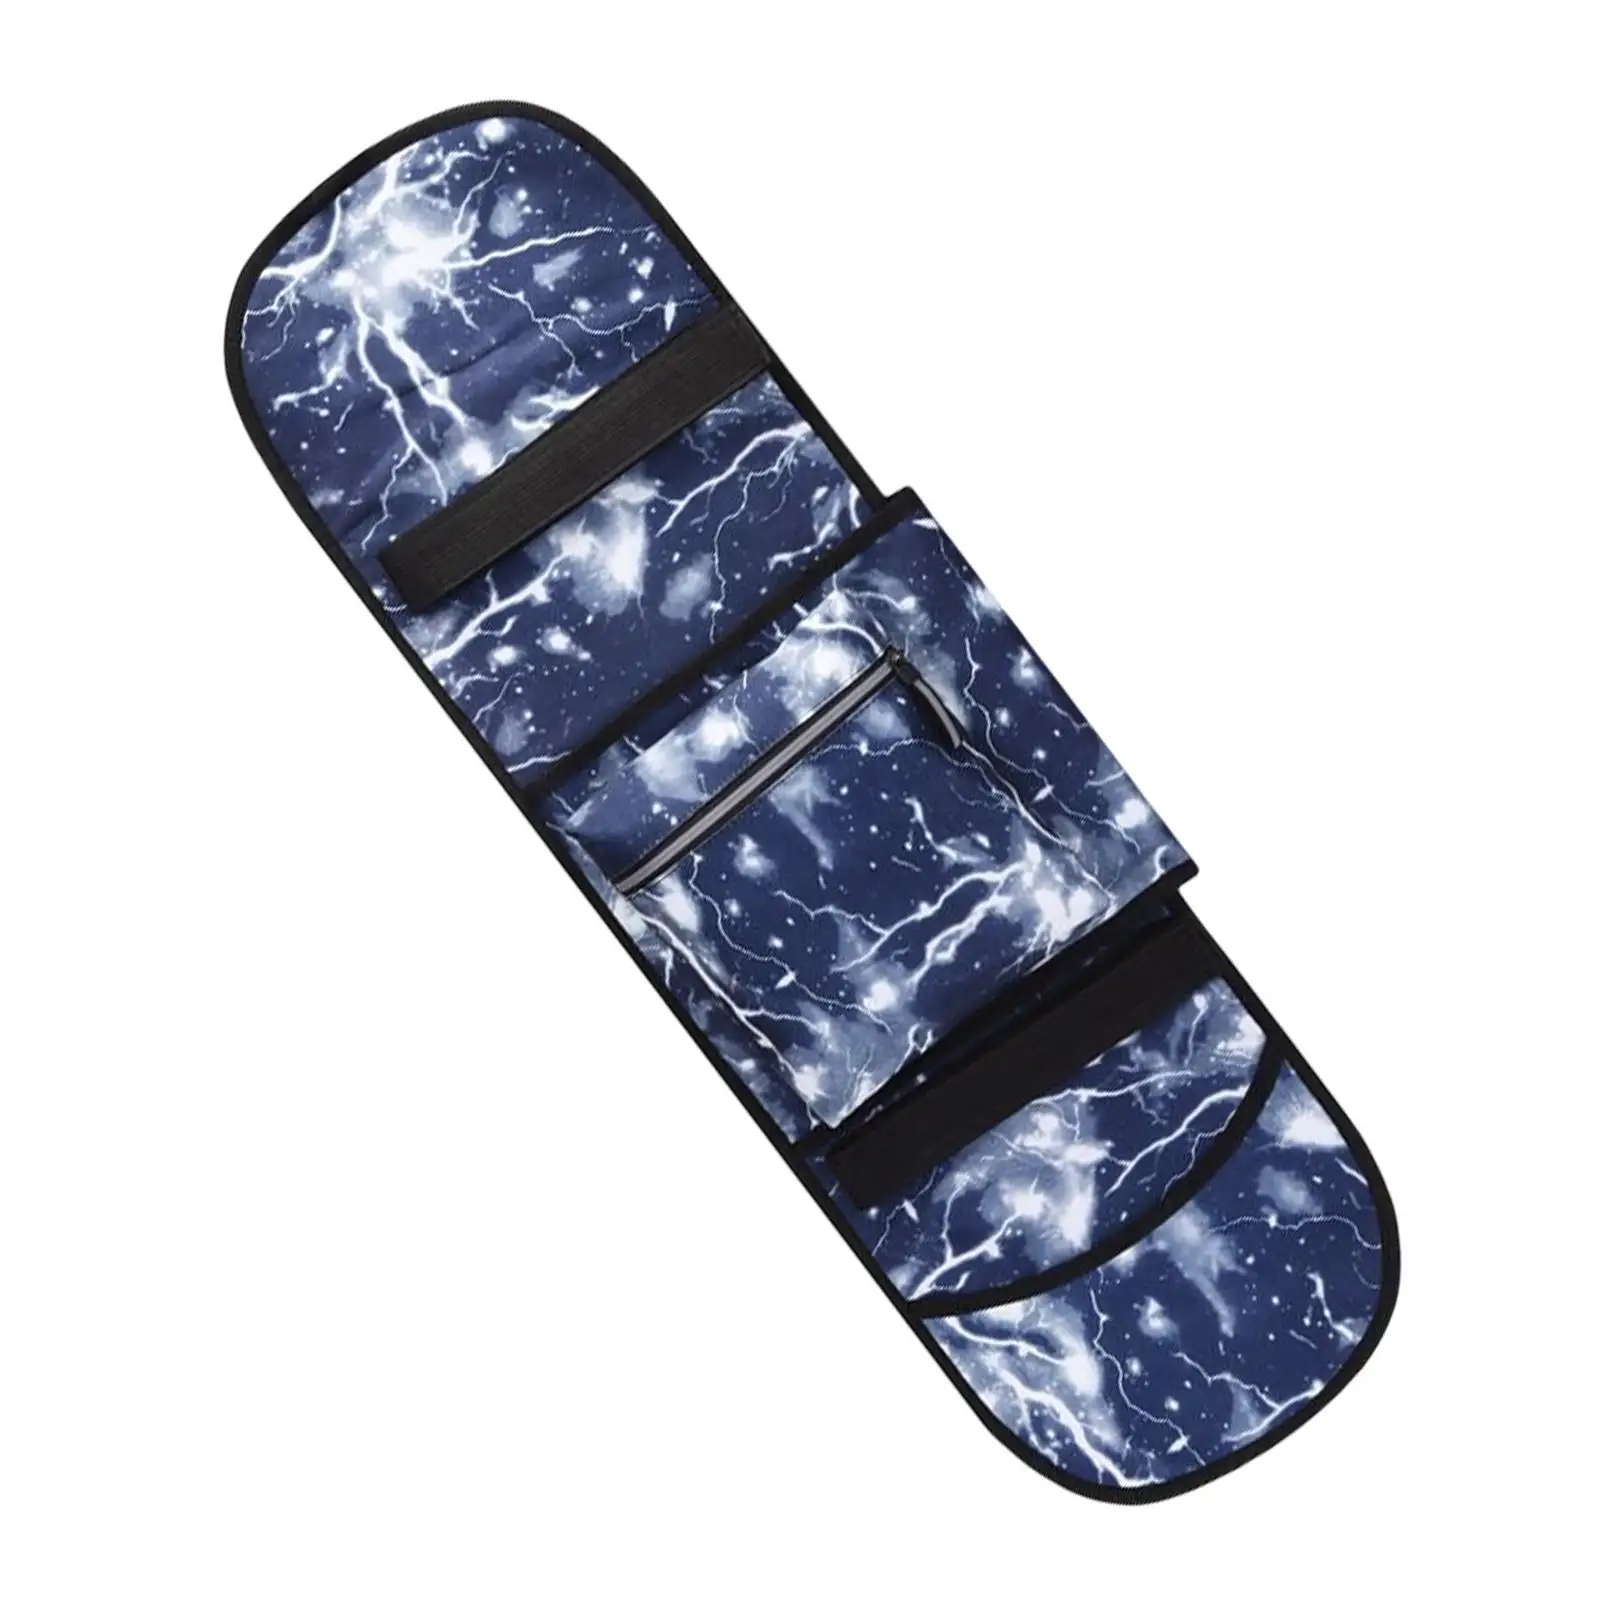 Skateboard Bag with Adjustable Shoulder Strap Waterproof Folding Skate Pouch Skateboard Backpack for Deck Teens Men and Boys